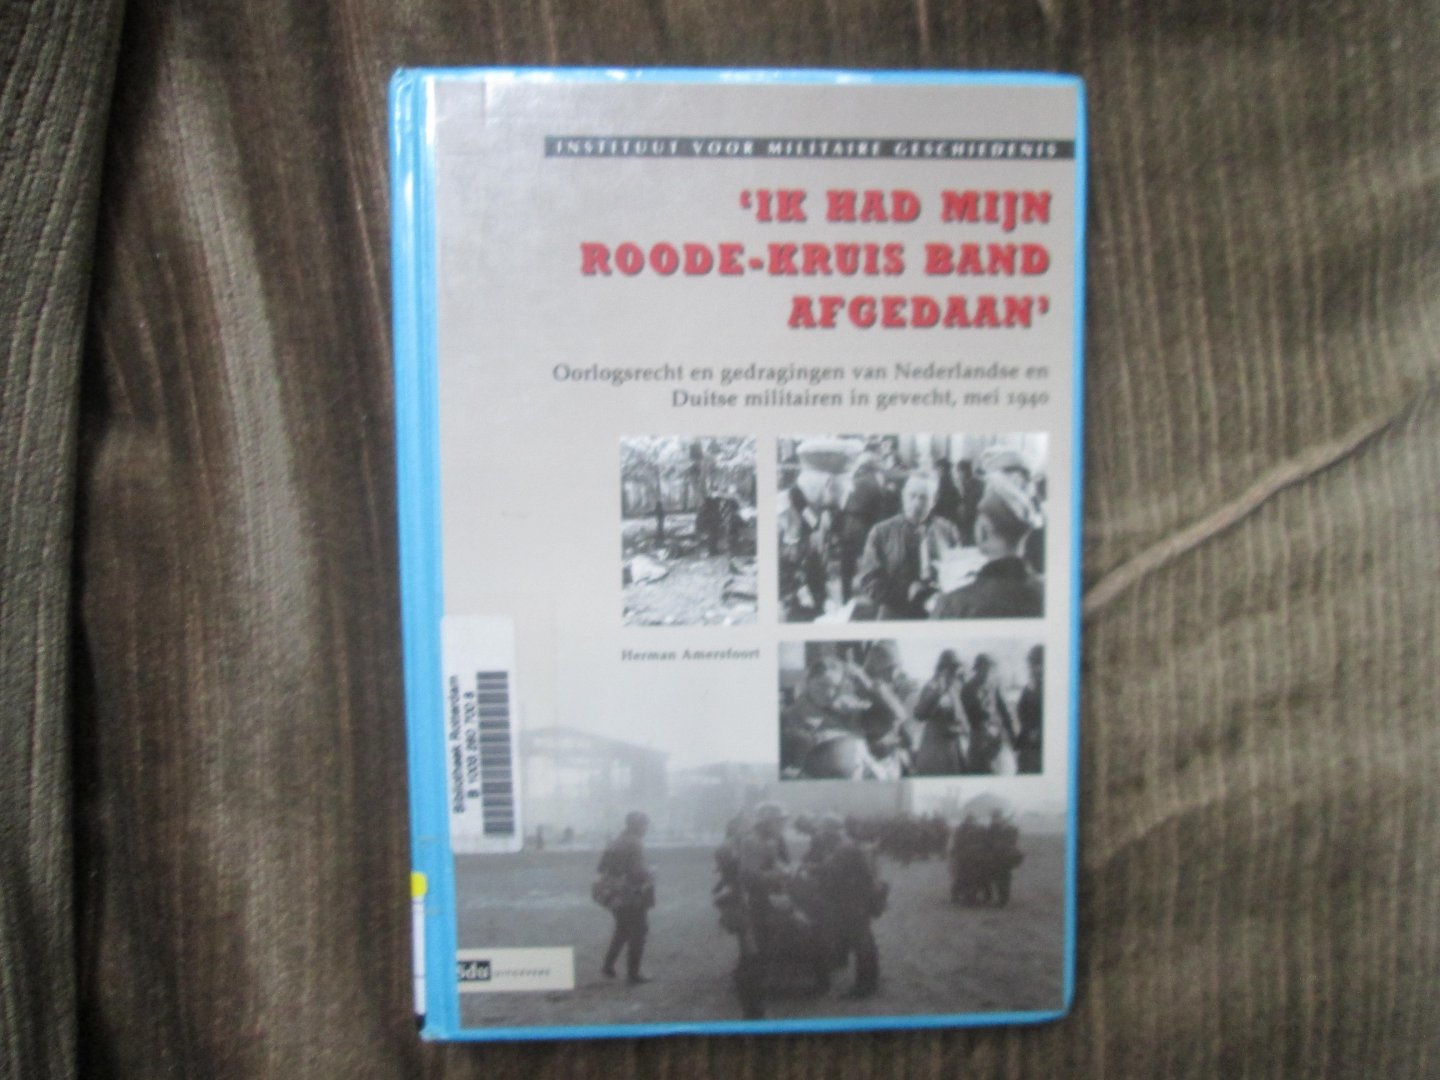 Amersfoort , Herman - ' IK HAD MIJN ROODE-KRUIS BAND AFGEDAAN ' ; oorlogsrecht en gedragingen van Nederlandse en Duitse militairen in gevecht , mei 1940